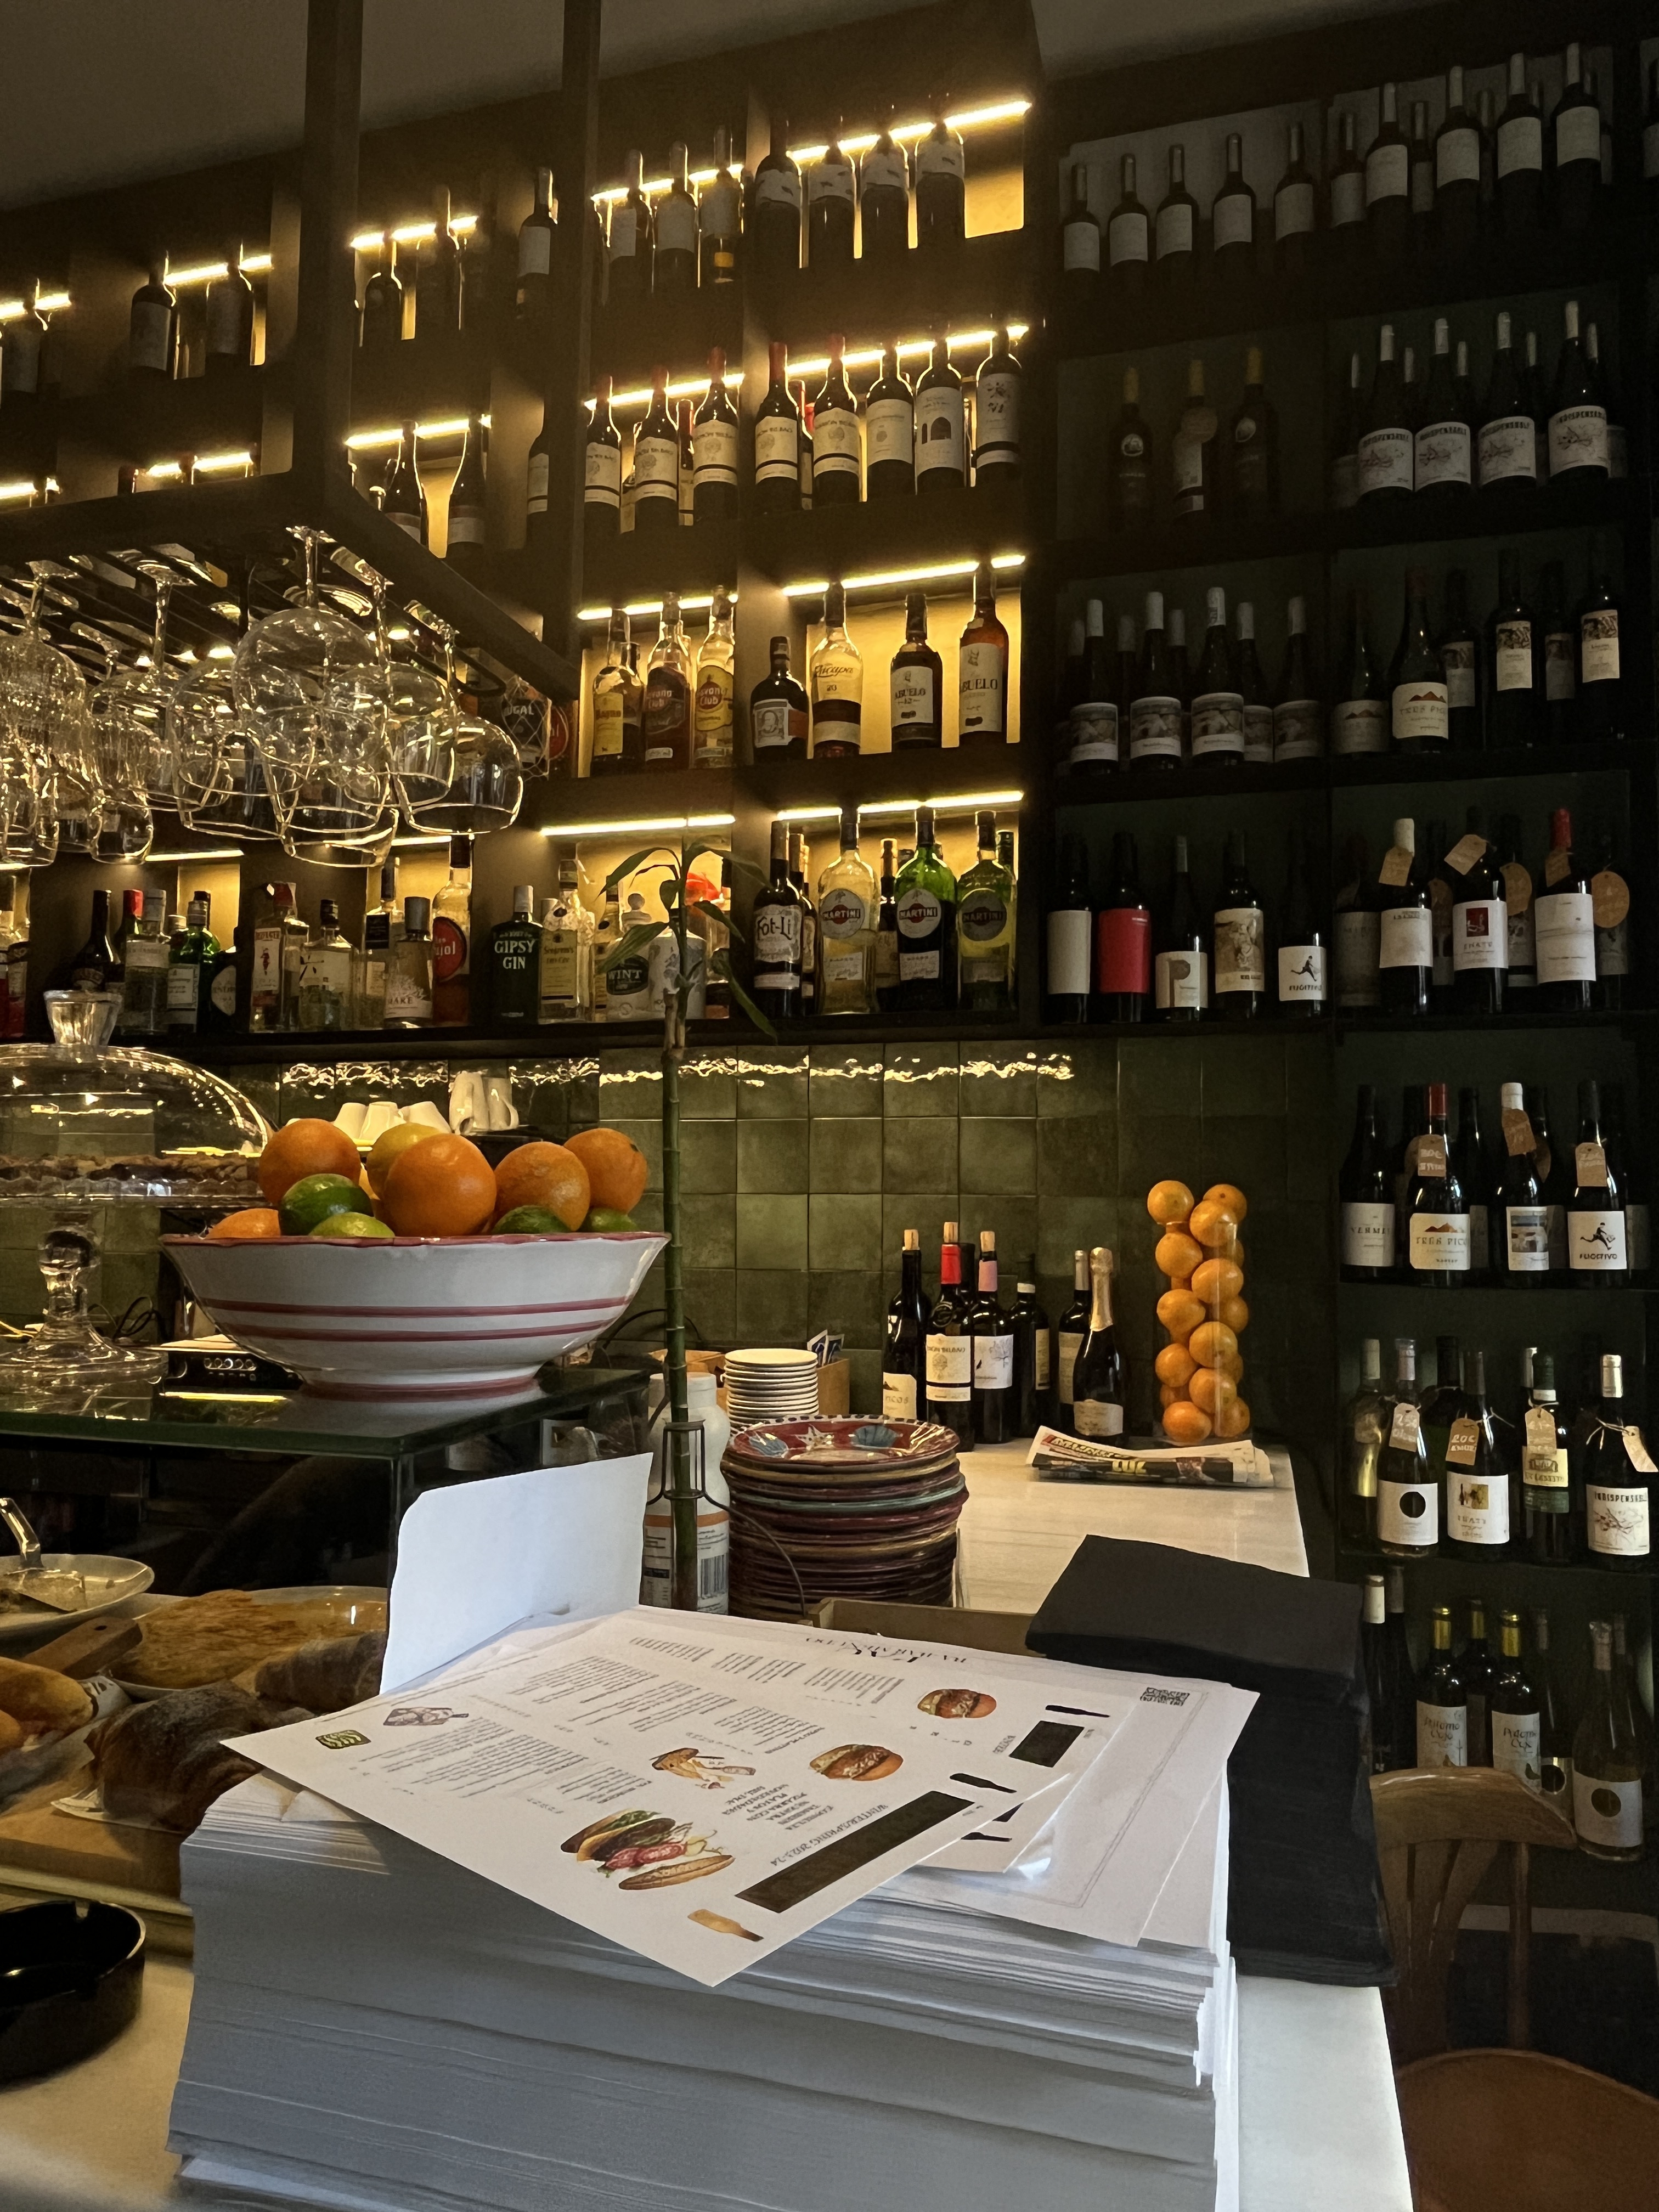 Cansat de restaurants refinats? Tasta aquest bar italià de Barcelona